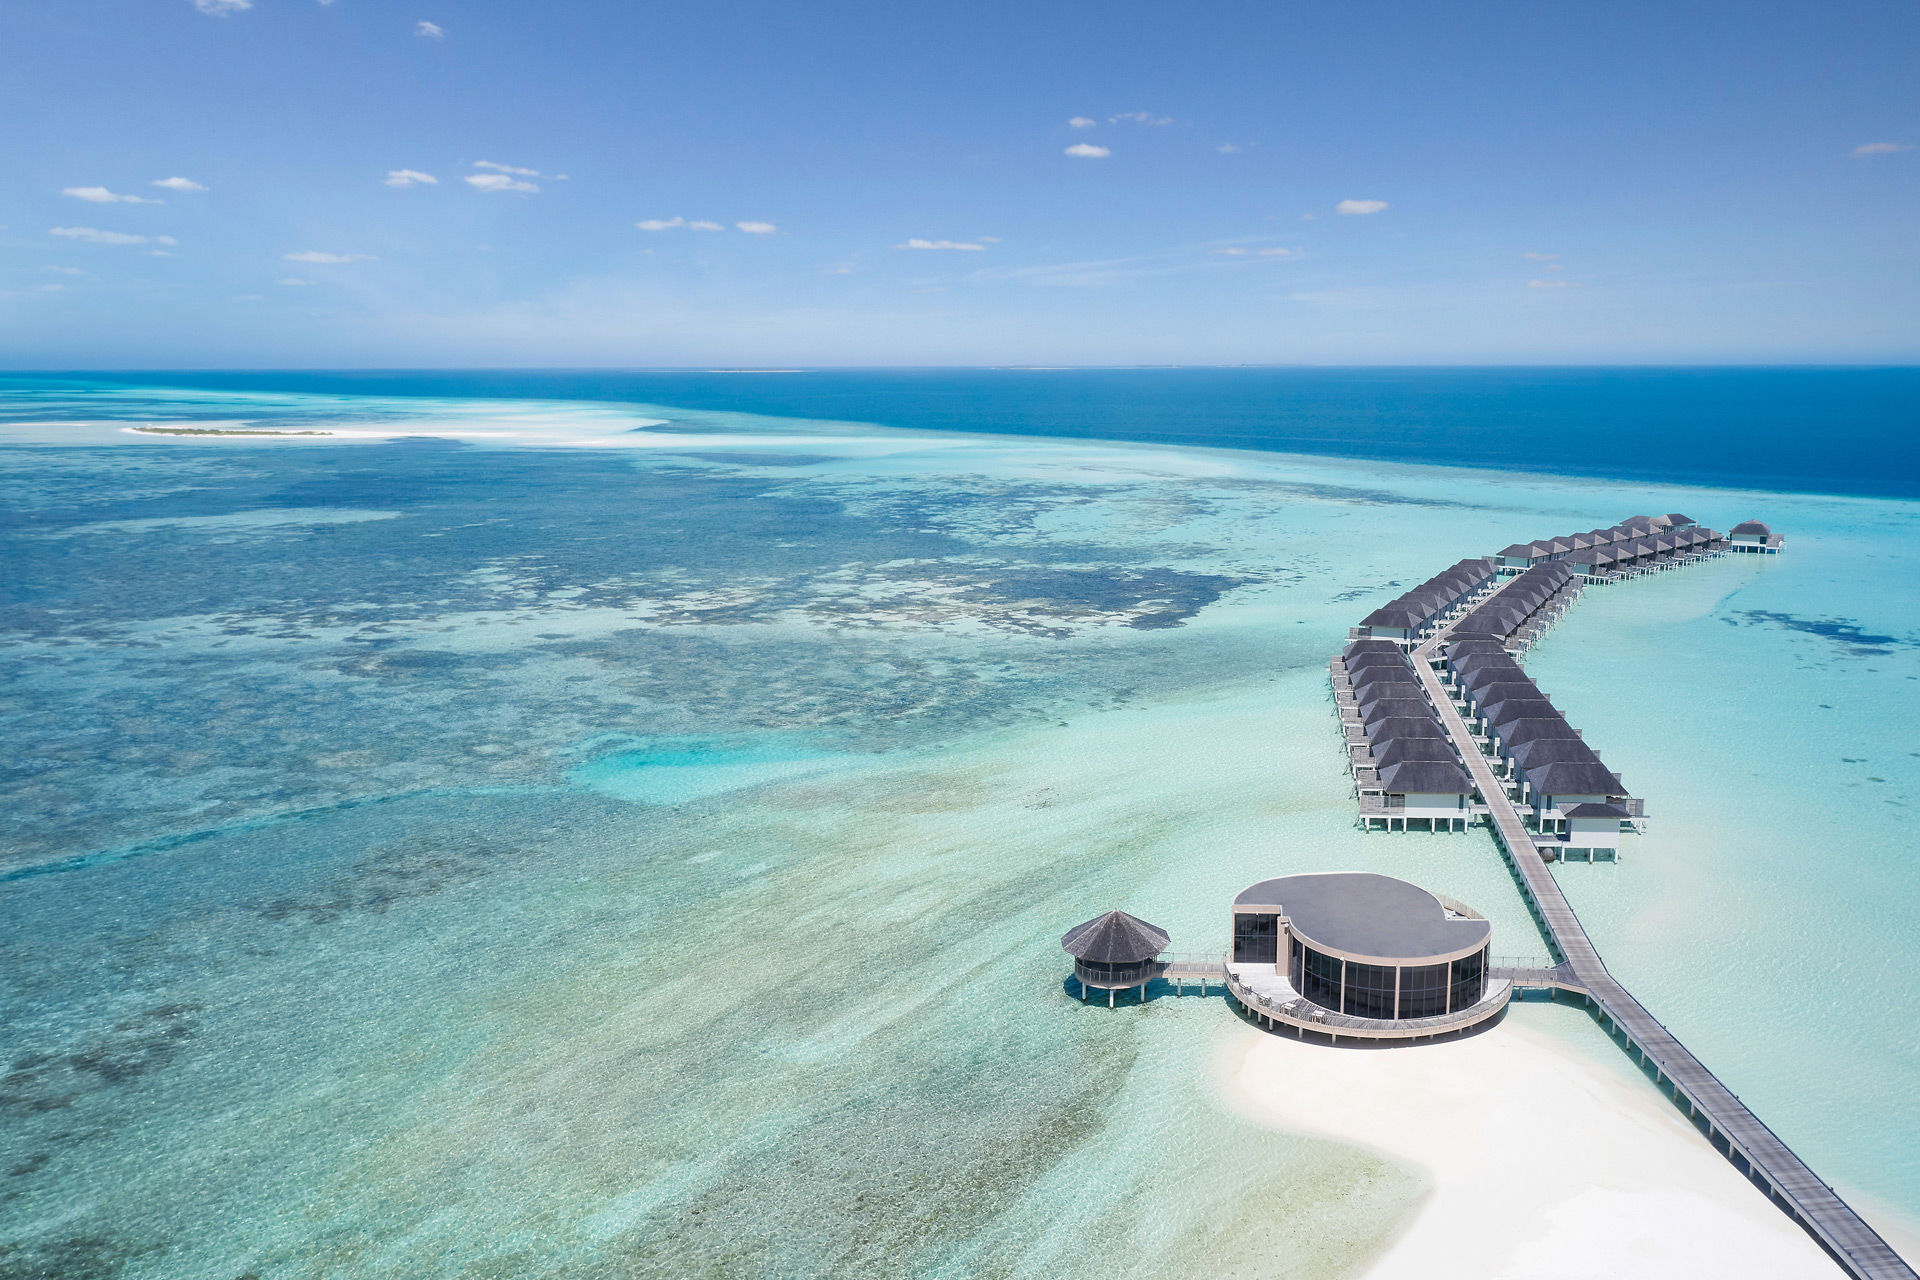 Aerial view of Le Meridien Maldives resort